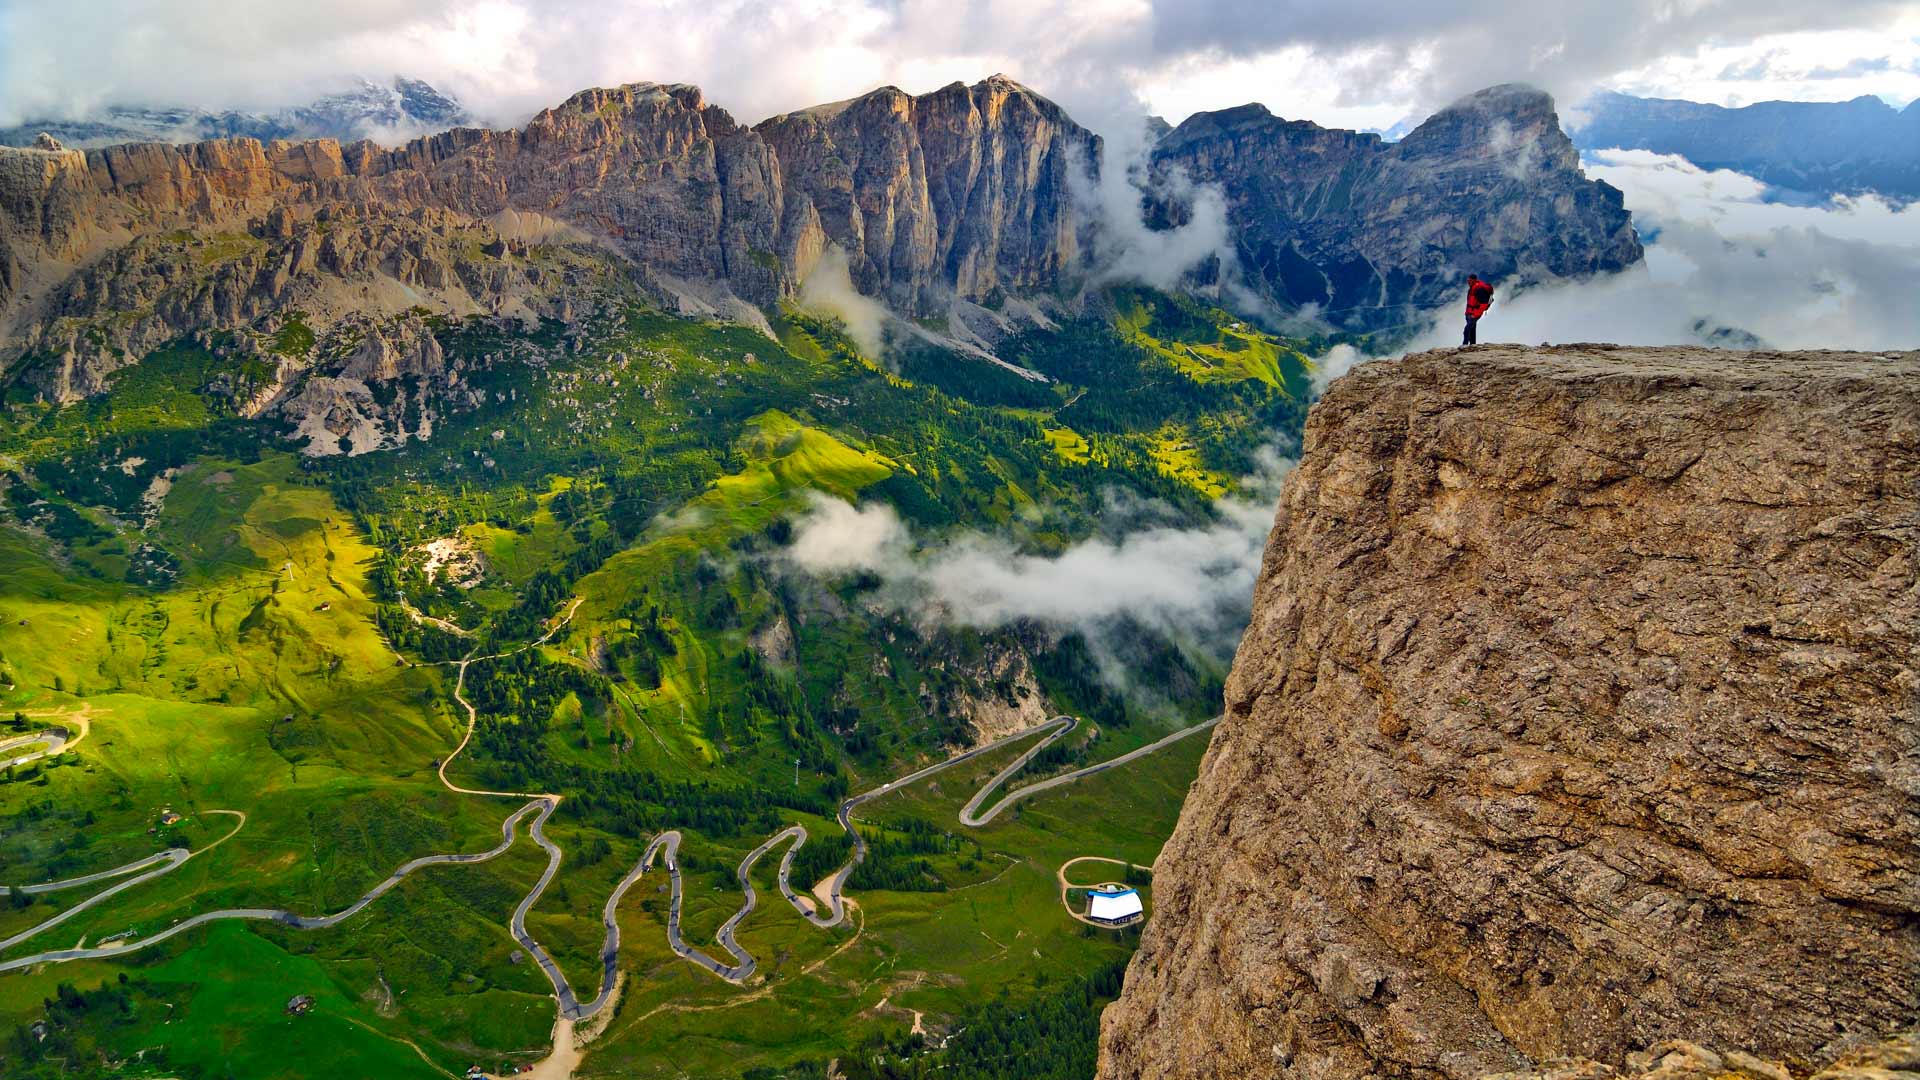 نگاره ای دل انگیز از یک کوهنورد بر فراز کوه بلند با دامنه طبیعتی